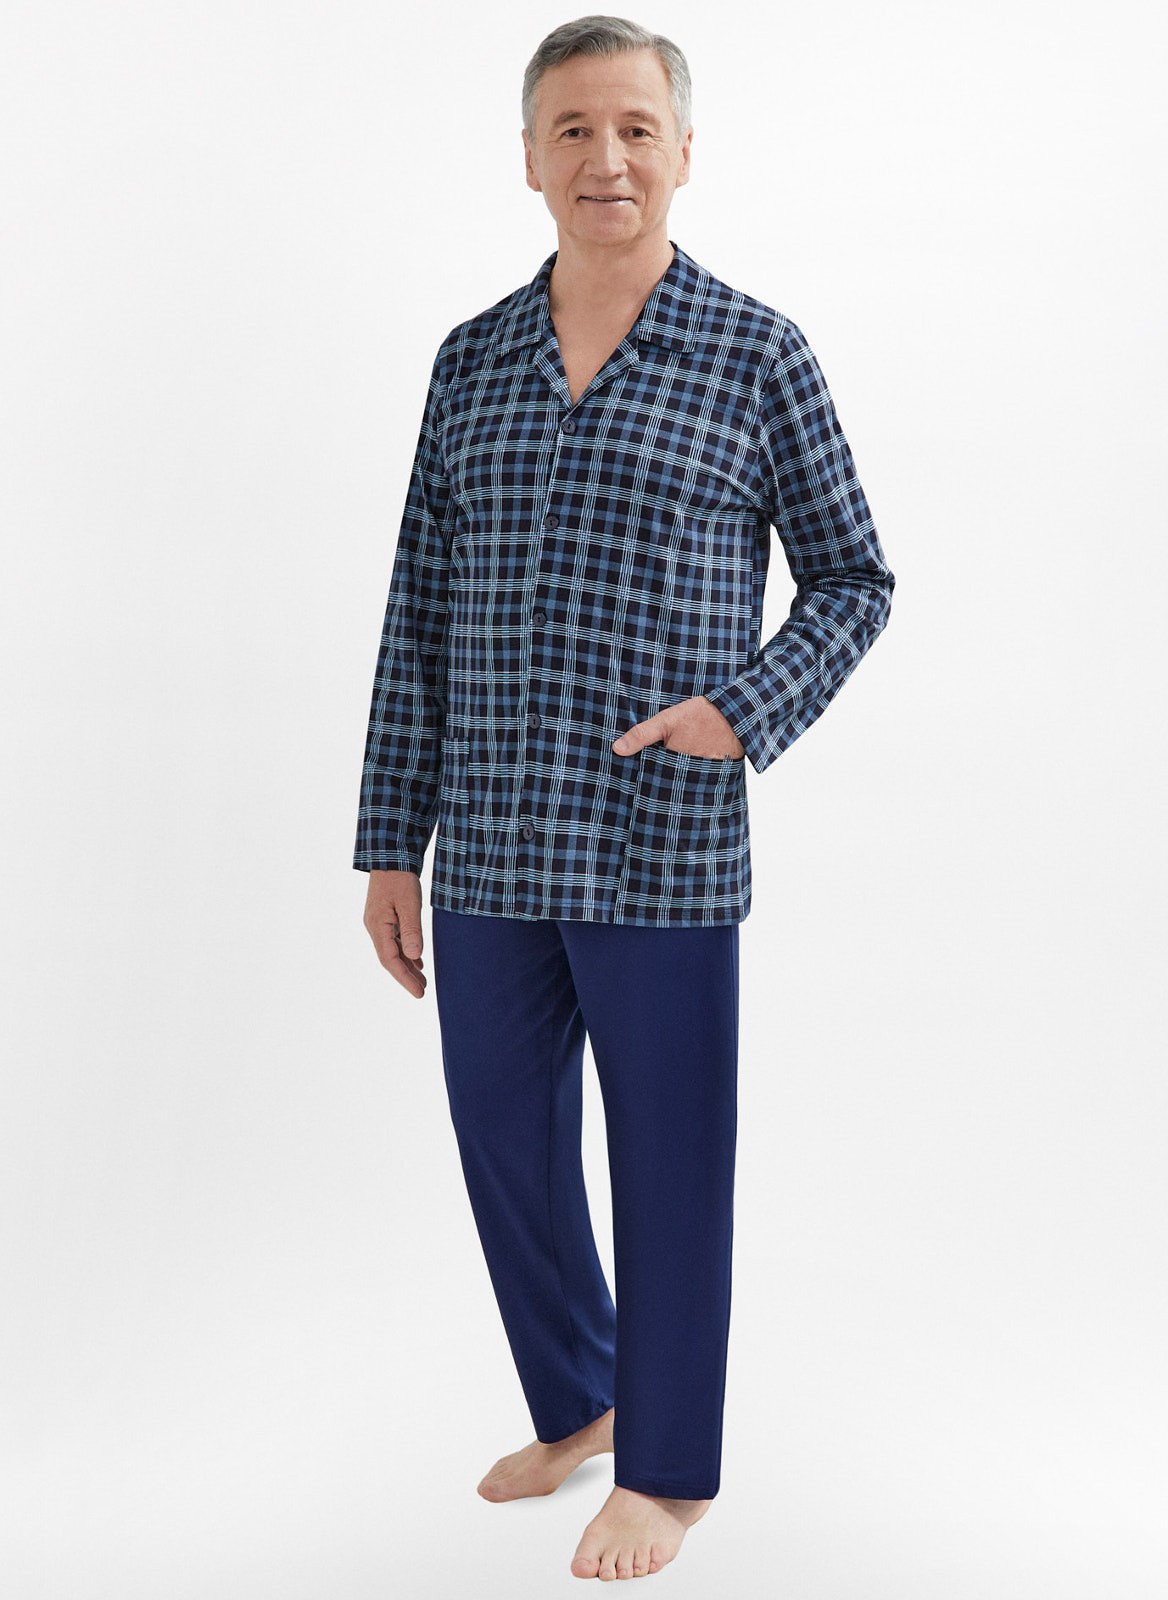 Rozepínané pánské pyžamo Martel Antoni 403 dł/r 3XL-4XL modrá 3xl